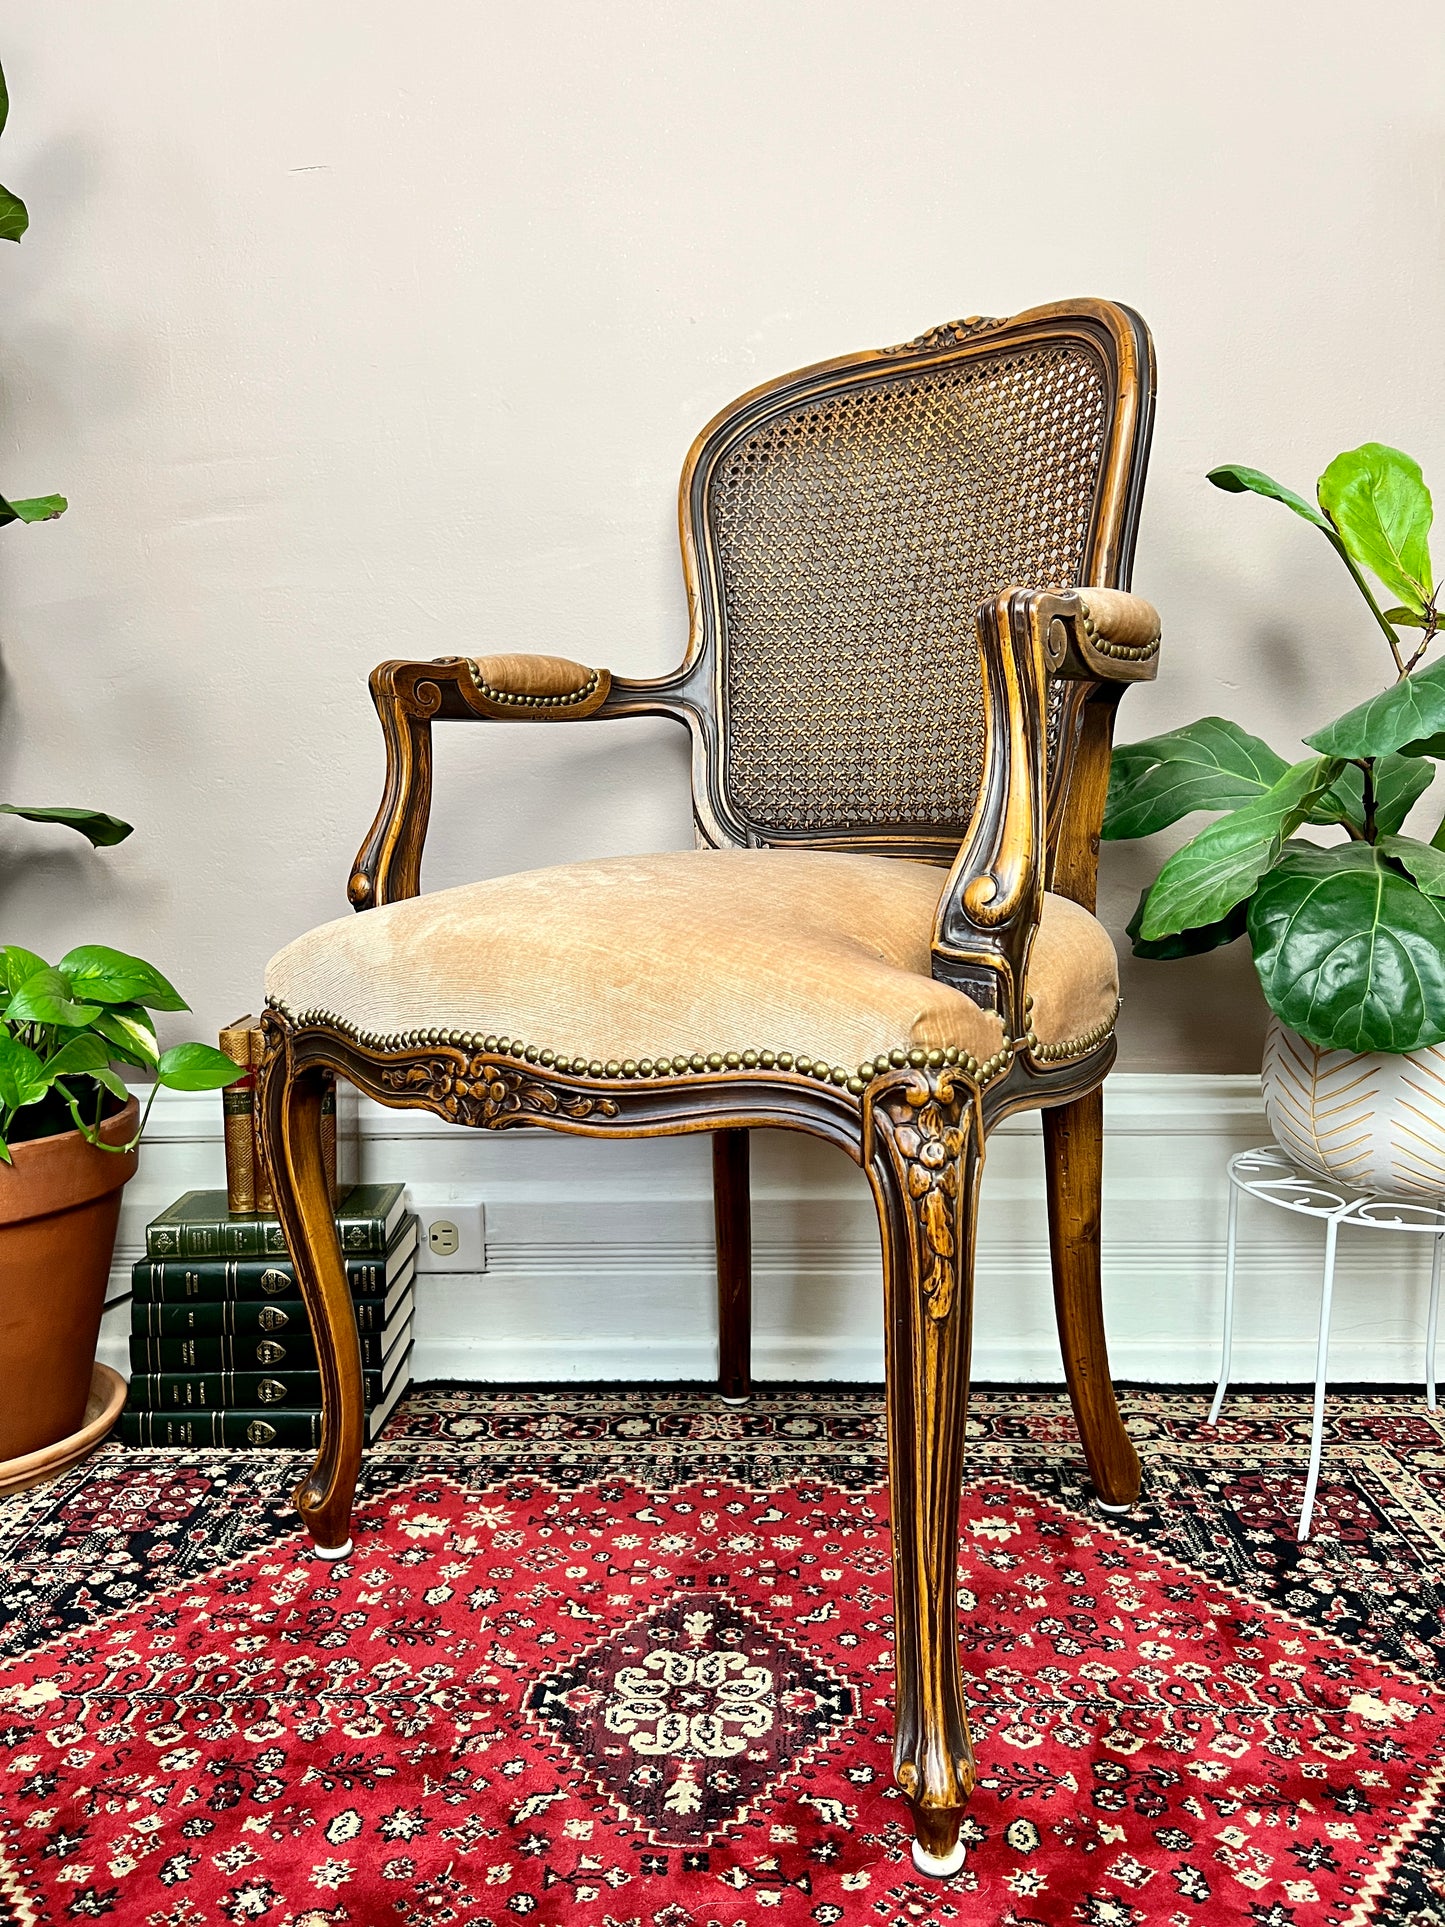 The Agatha Chair